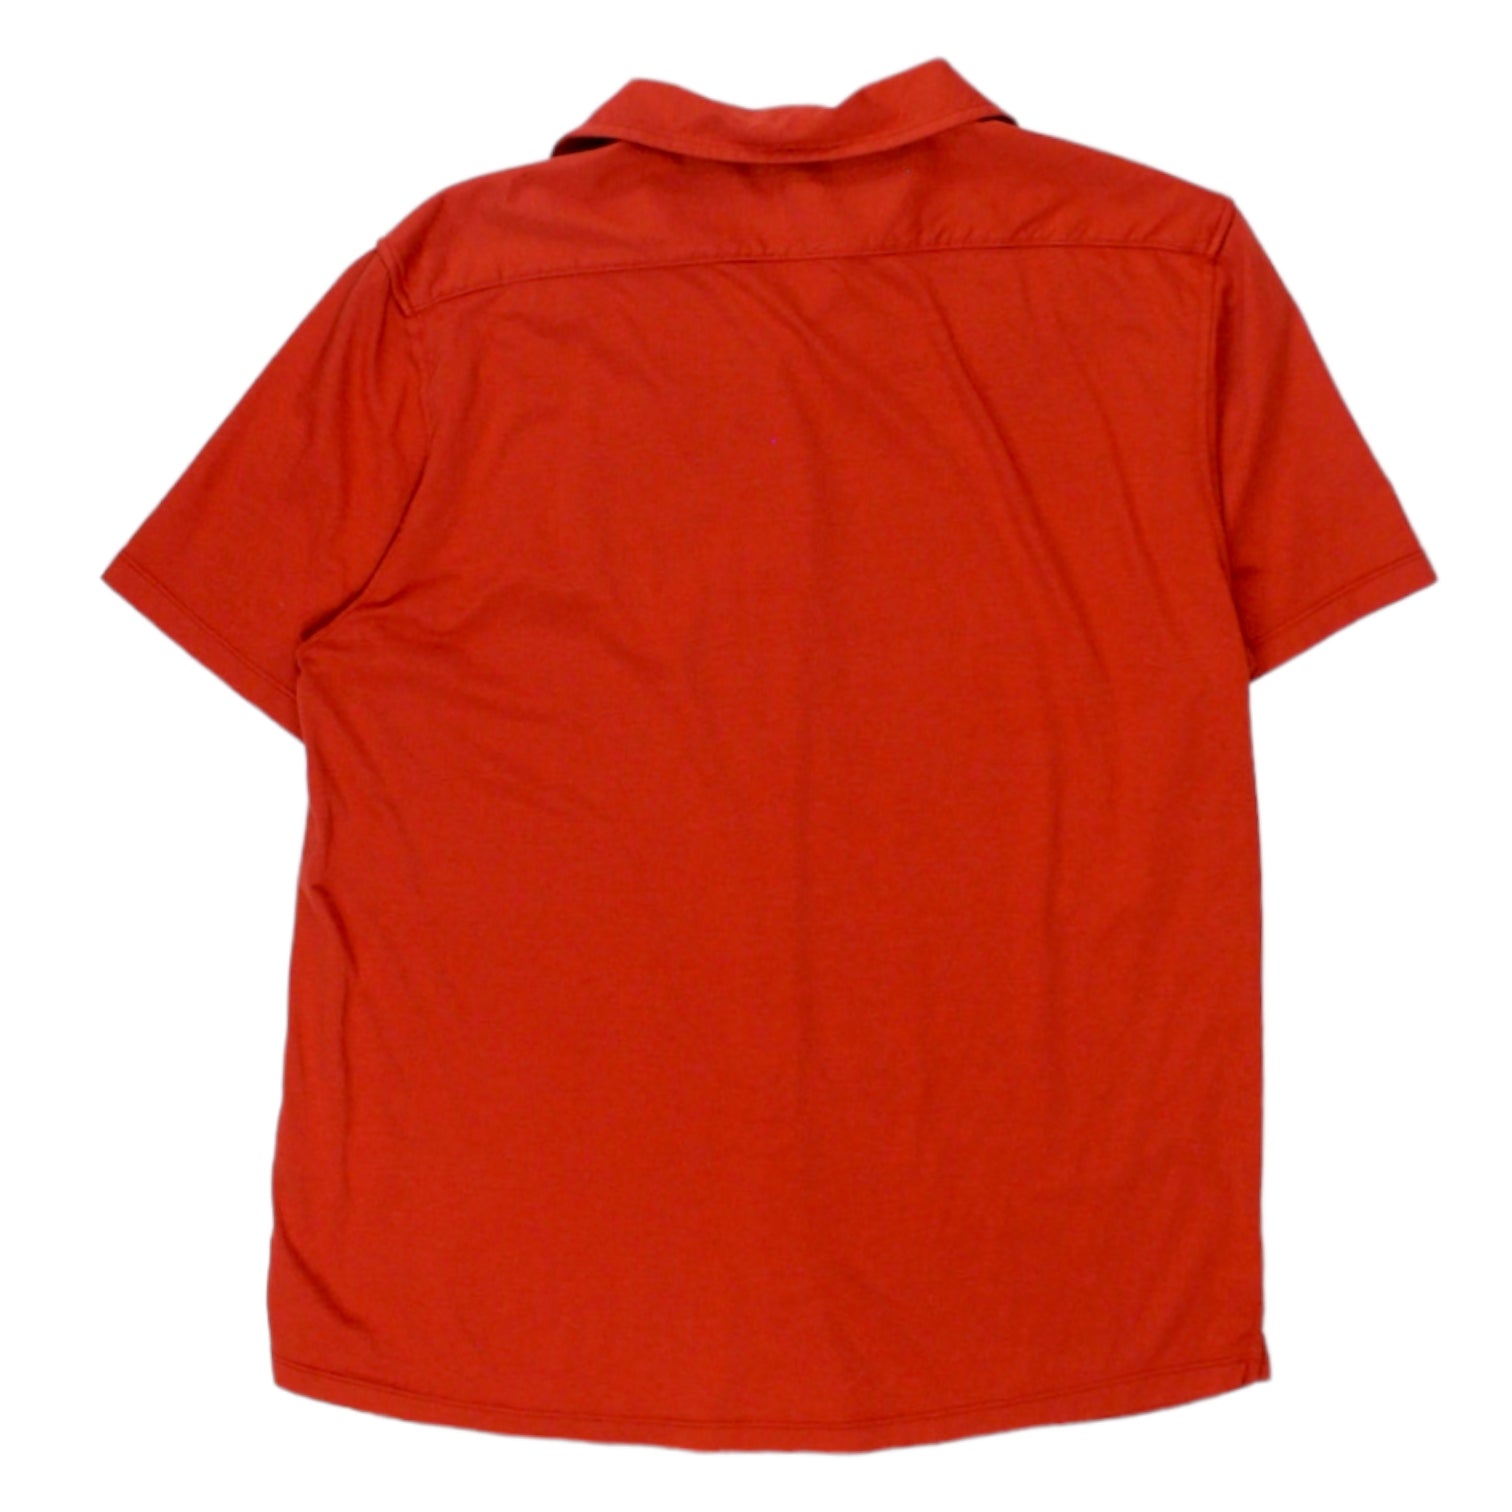 Katherine Hamnett Red Jersey Shirt